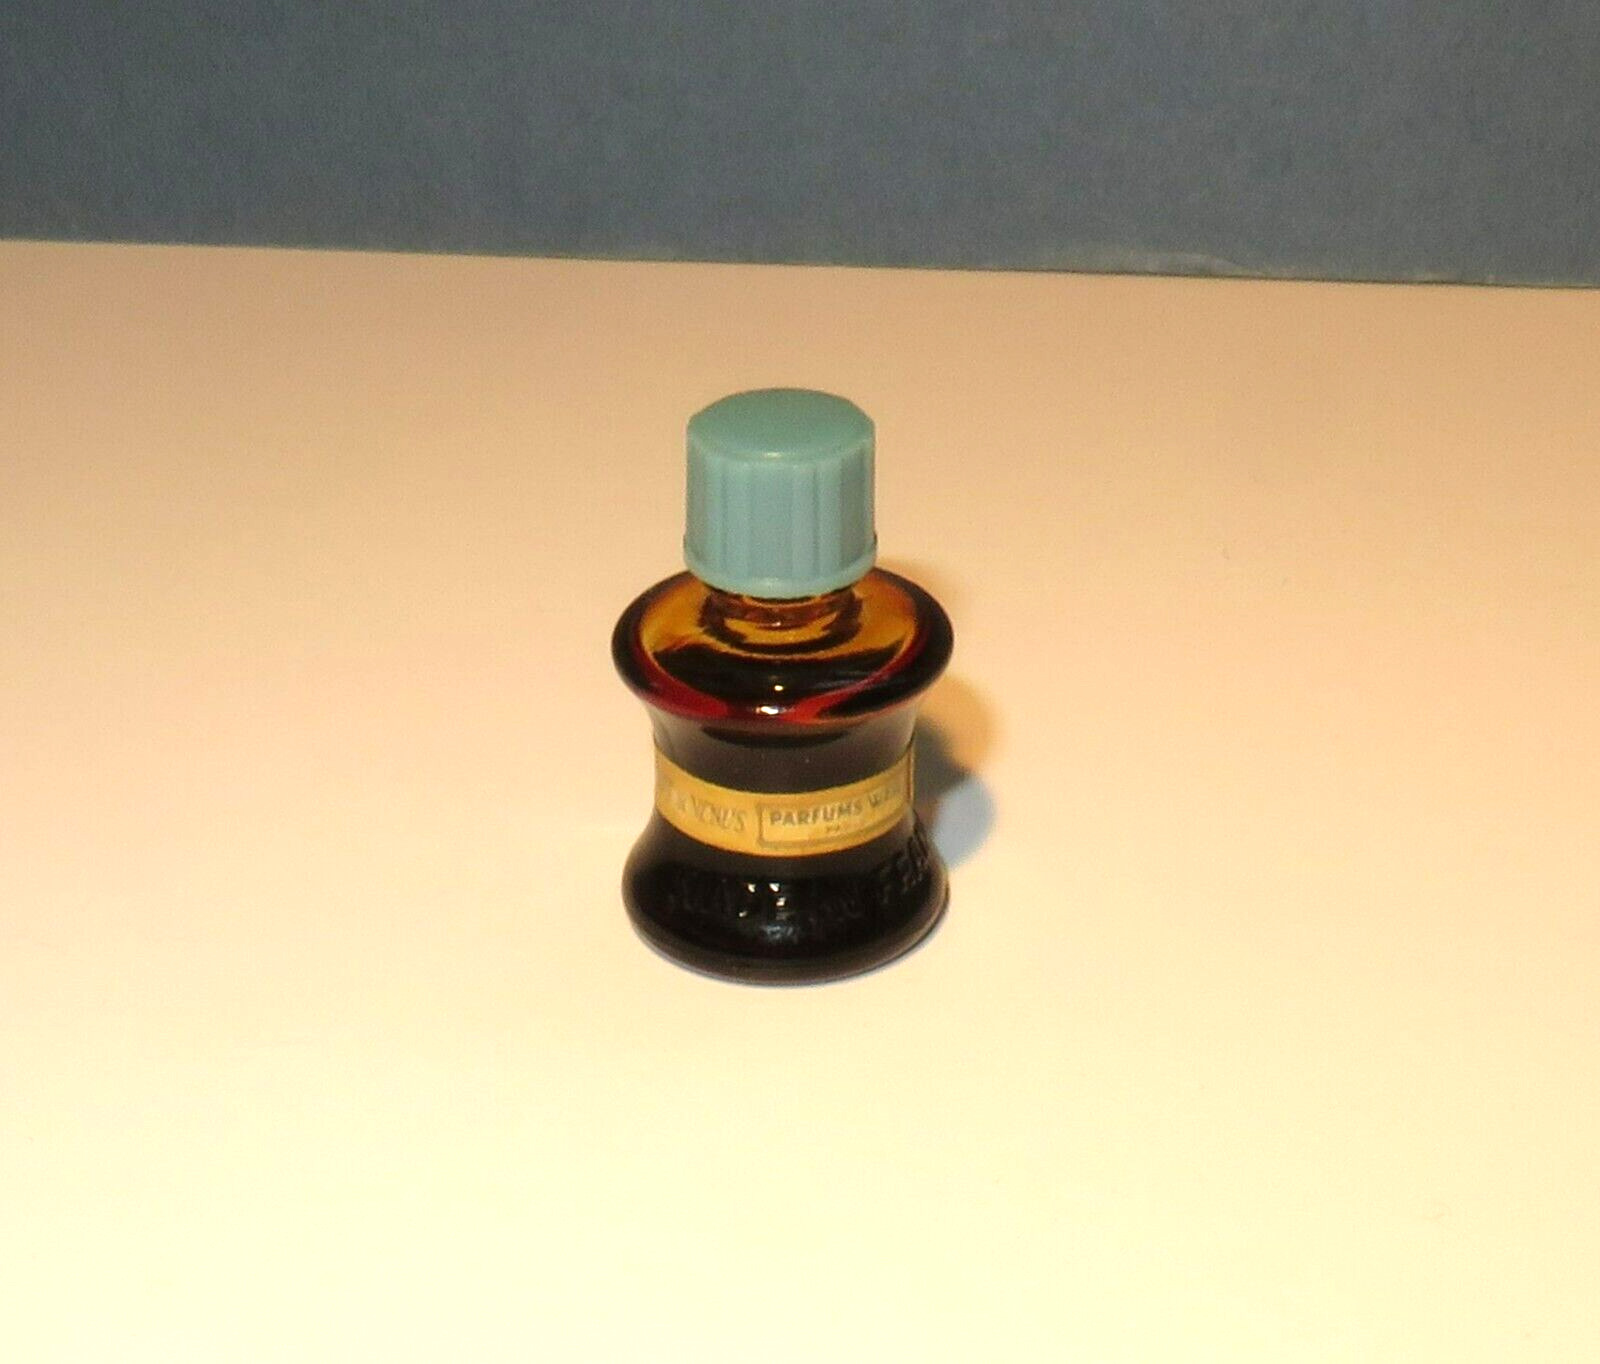 WEIL Zibeline SECRET DE VENUS Bath Oil vintage 1/8 oz turquoise cap looks full